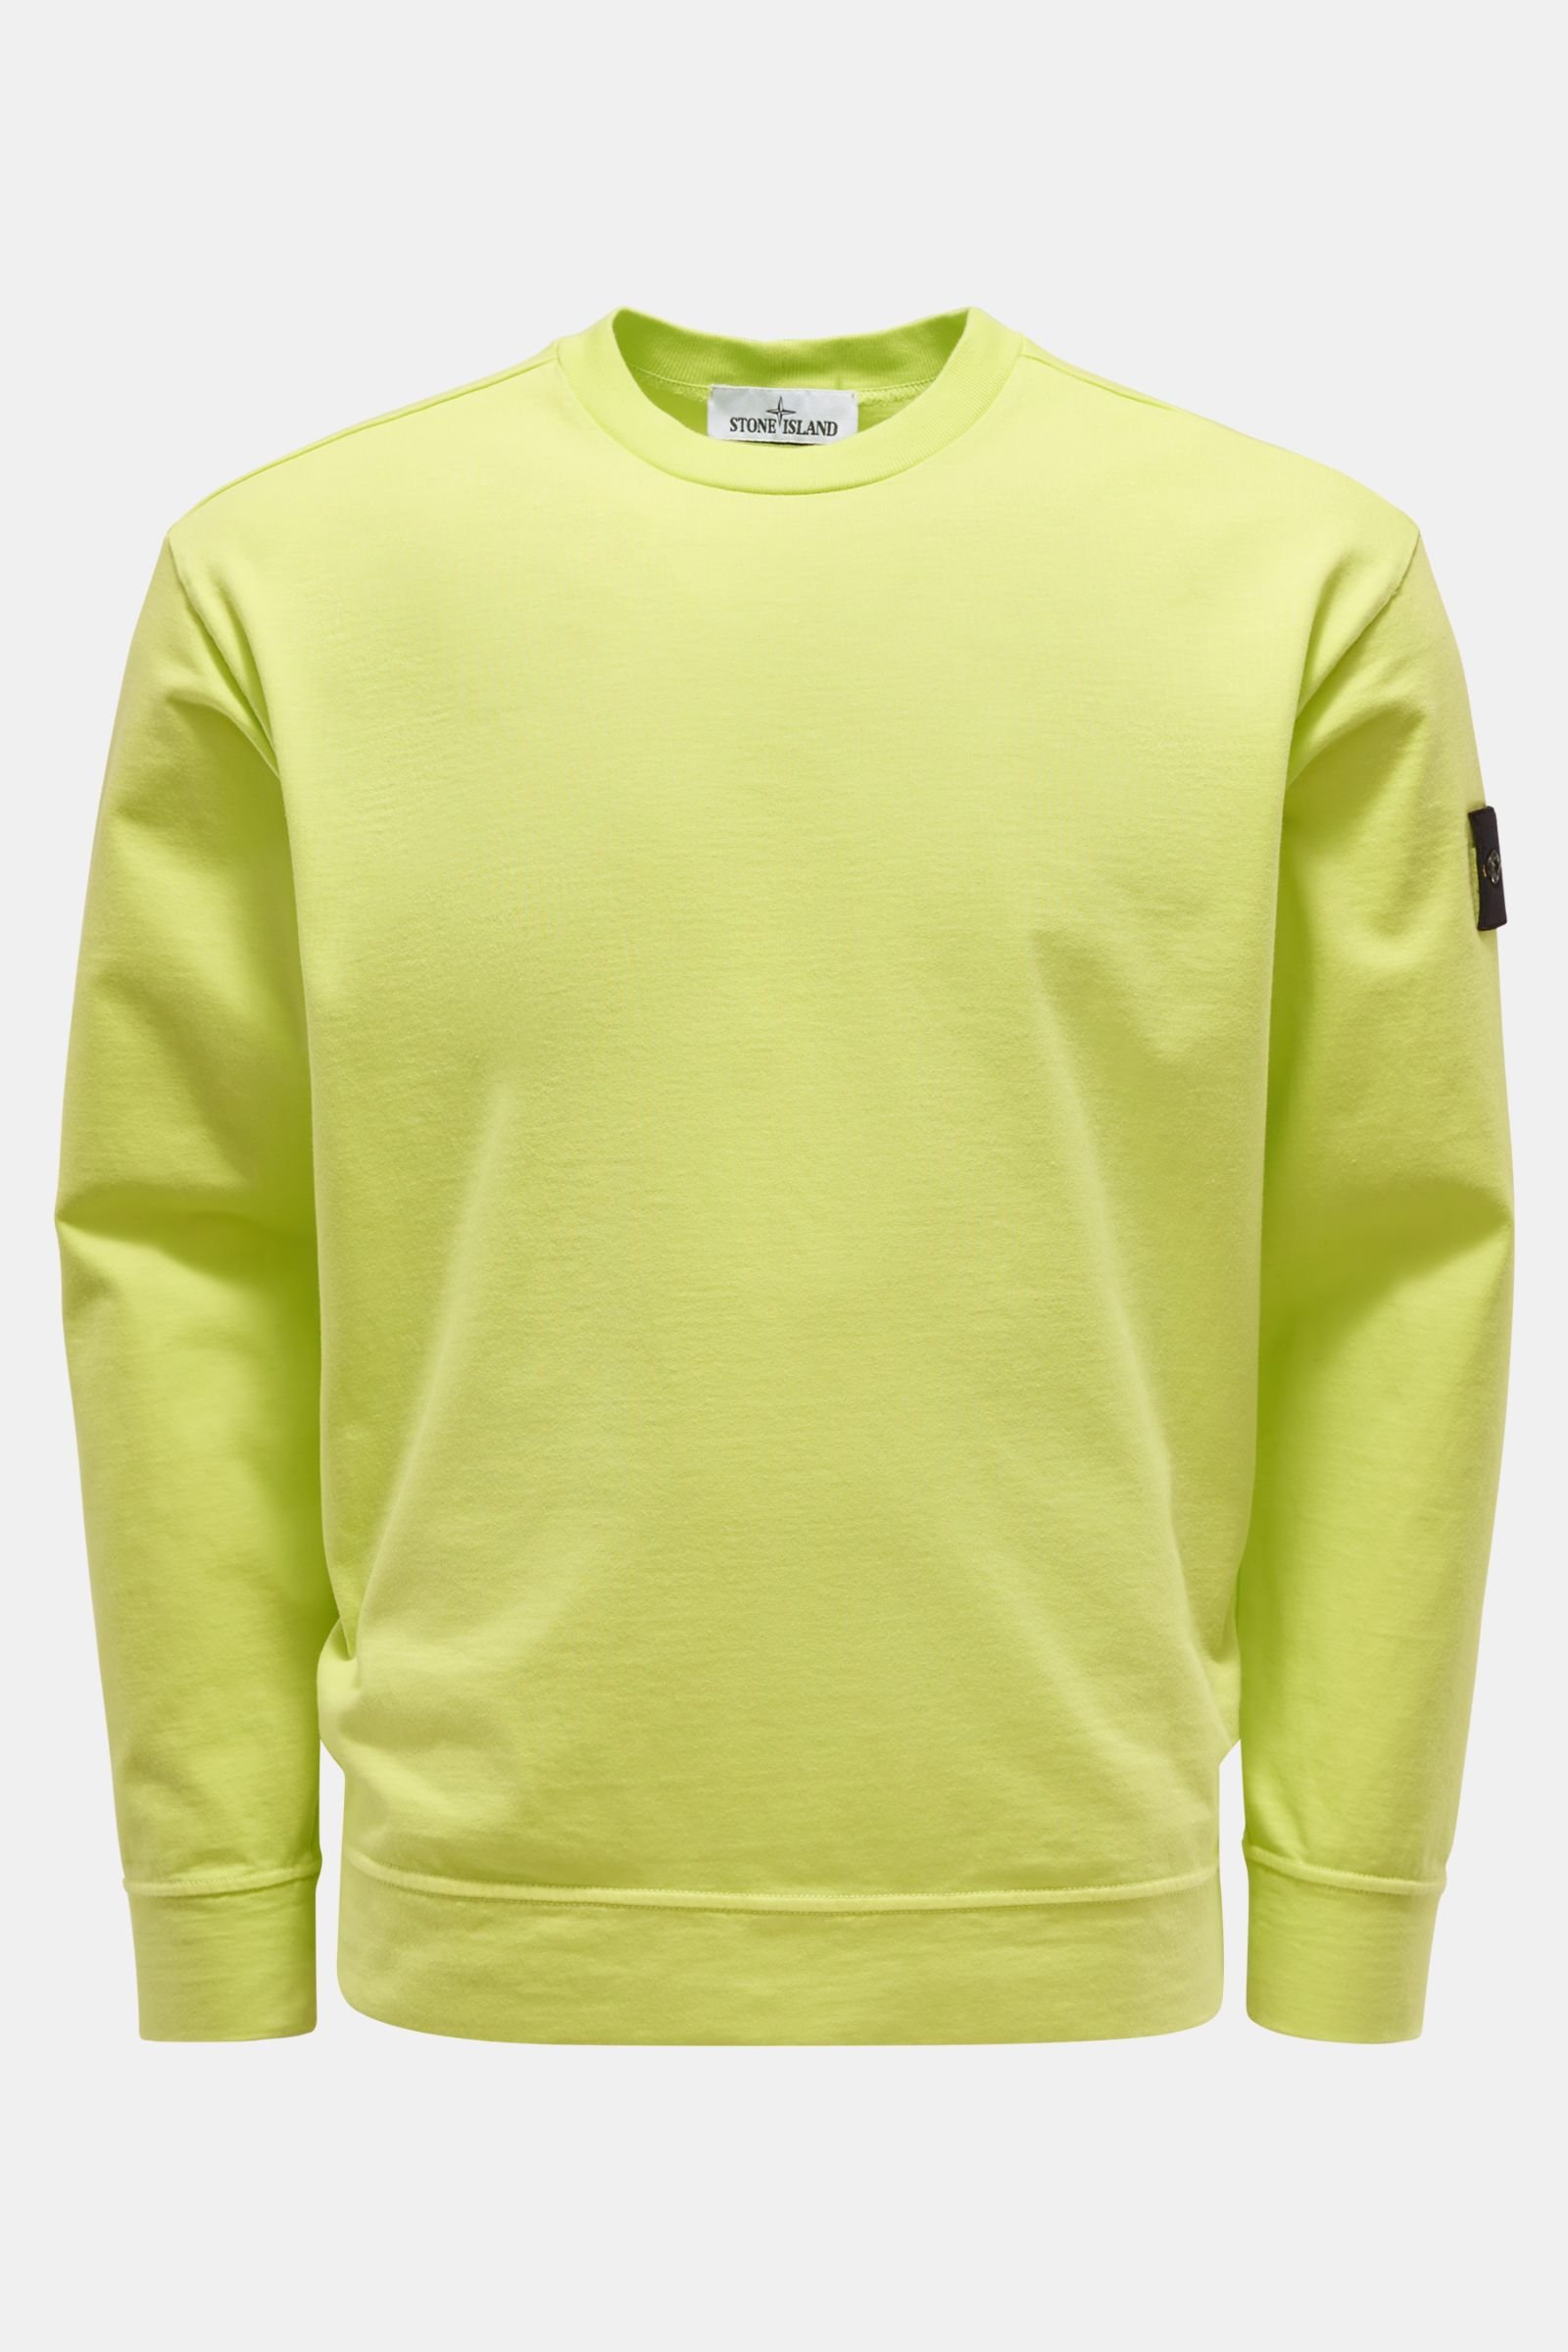 Rundhals-Sweatshirt neongrün